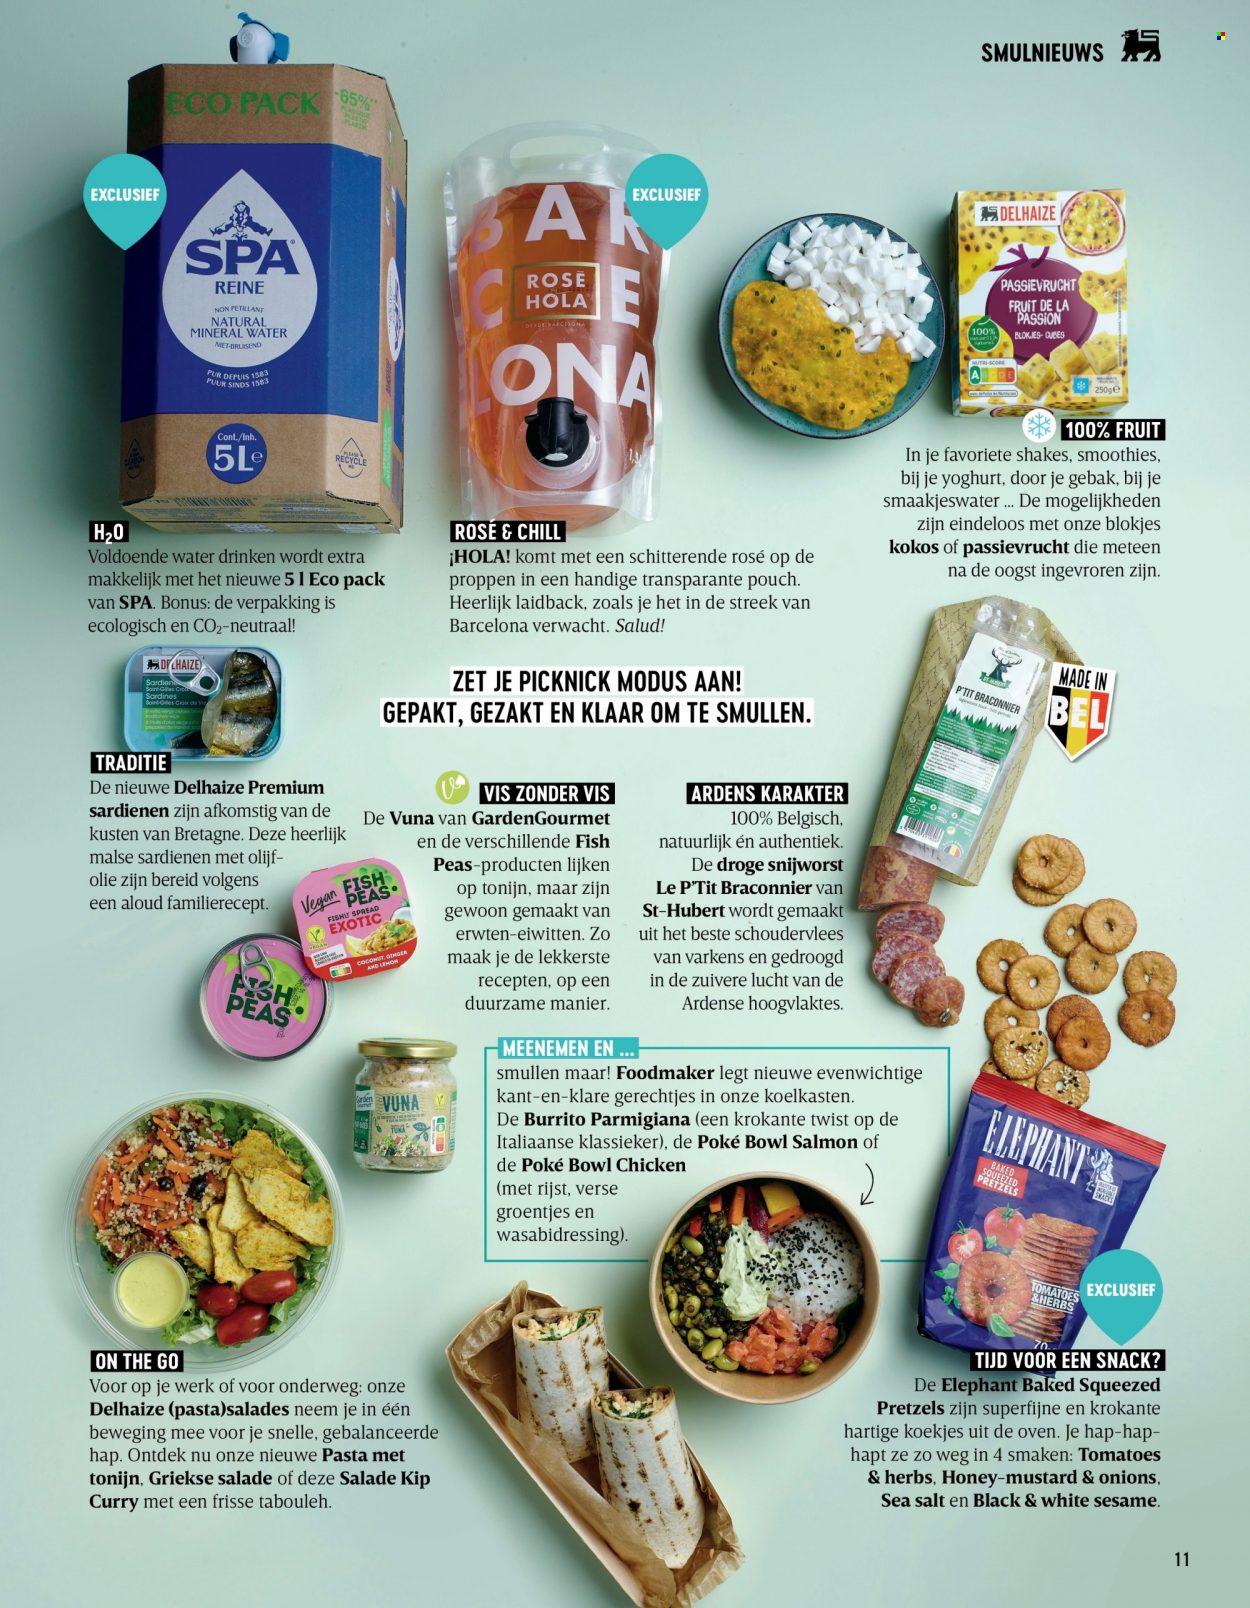 thumbnail - Delhaize-aanbieding -  producten in de aanbieding - pretzels, gebak, passievrucht, tonijn, yoghurt, koekjes, pasta, rijst, curry. Pagina 11.